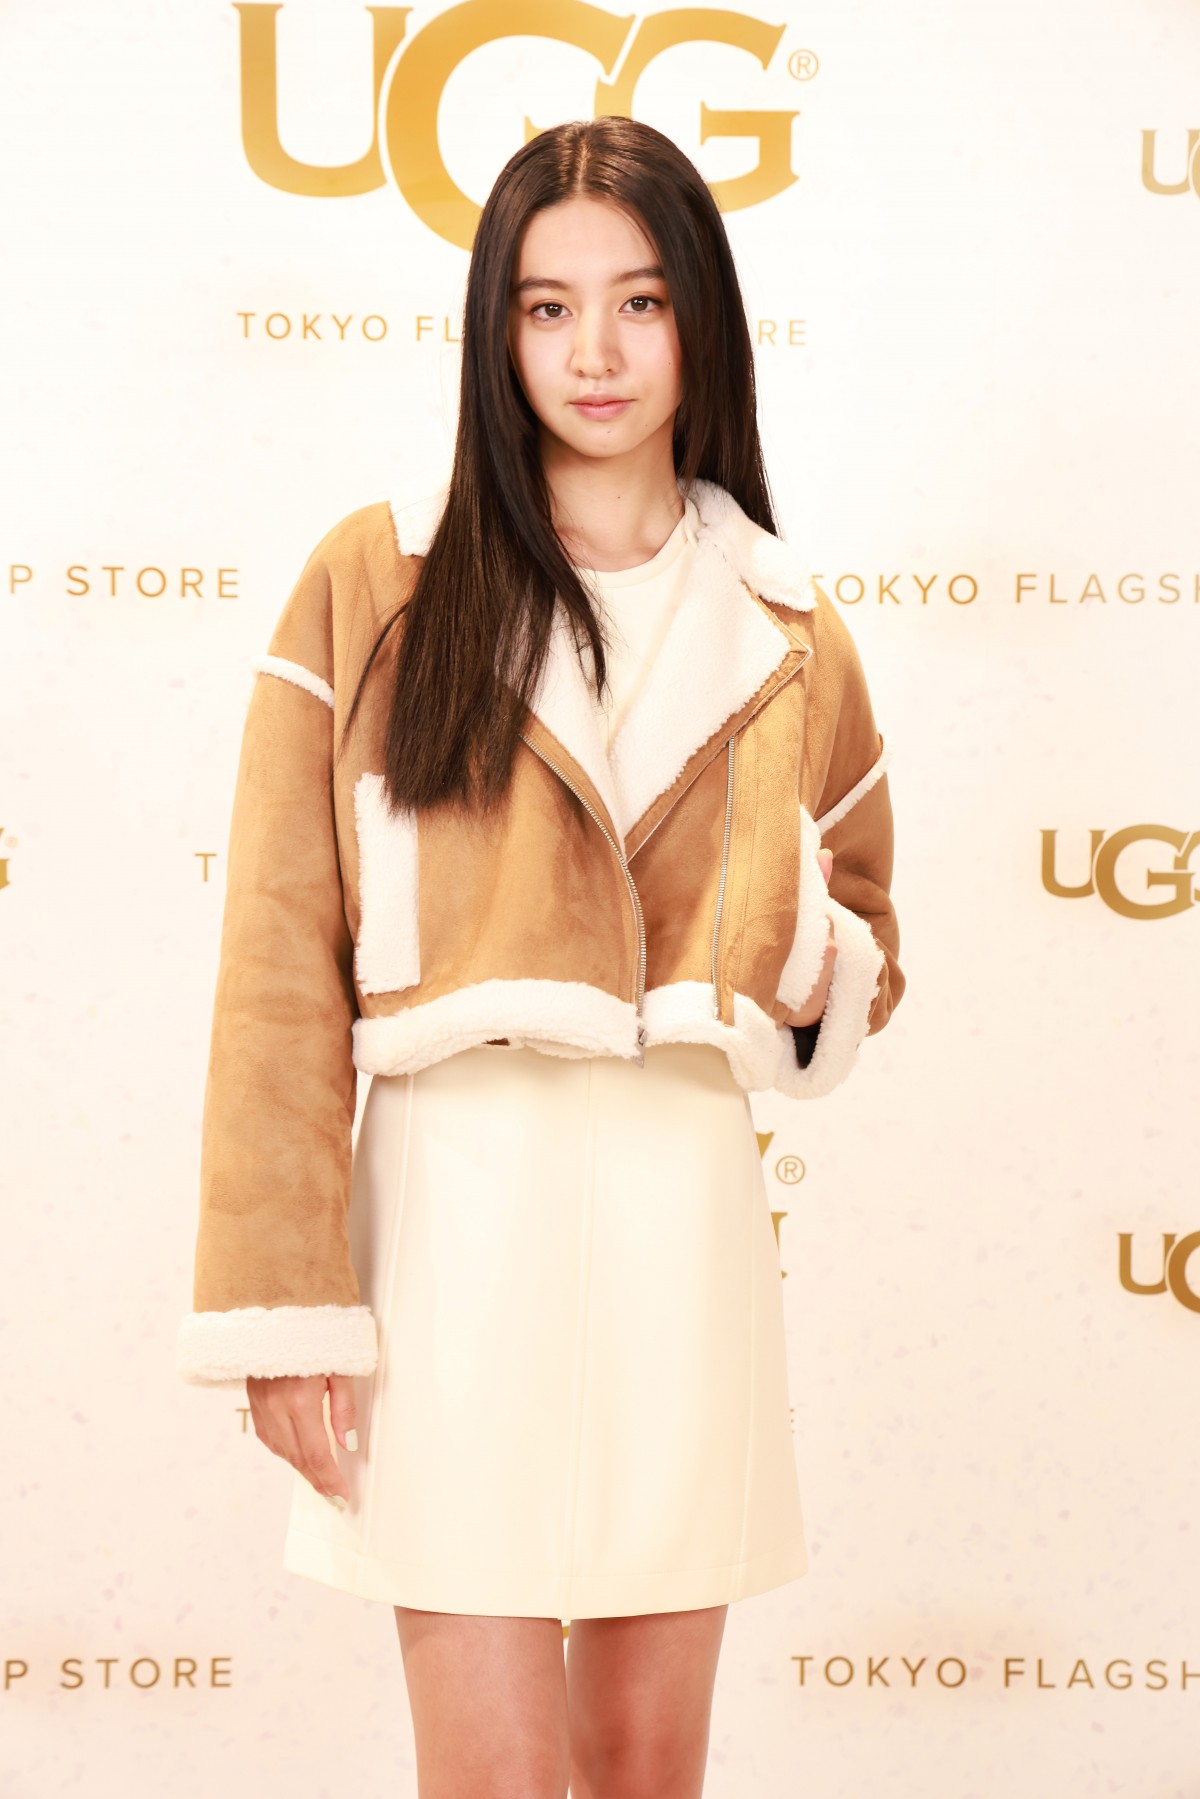 関連動画 | Koki,ミニ丈衣装で『UGG TOKYO』オープン記念イベント　テープカットで笑顔  | ORICON NEWS